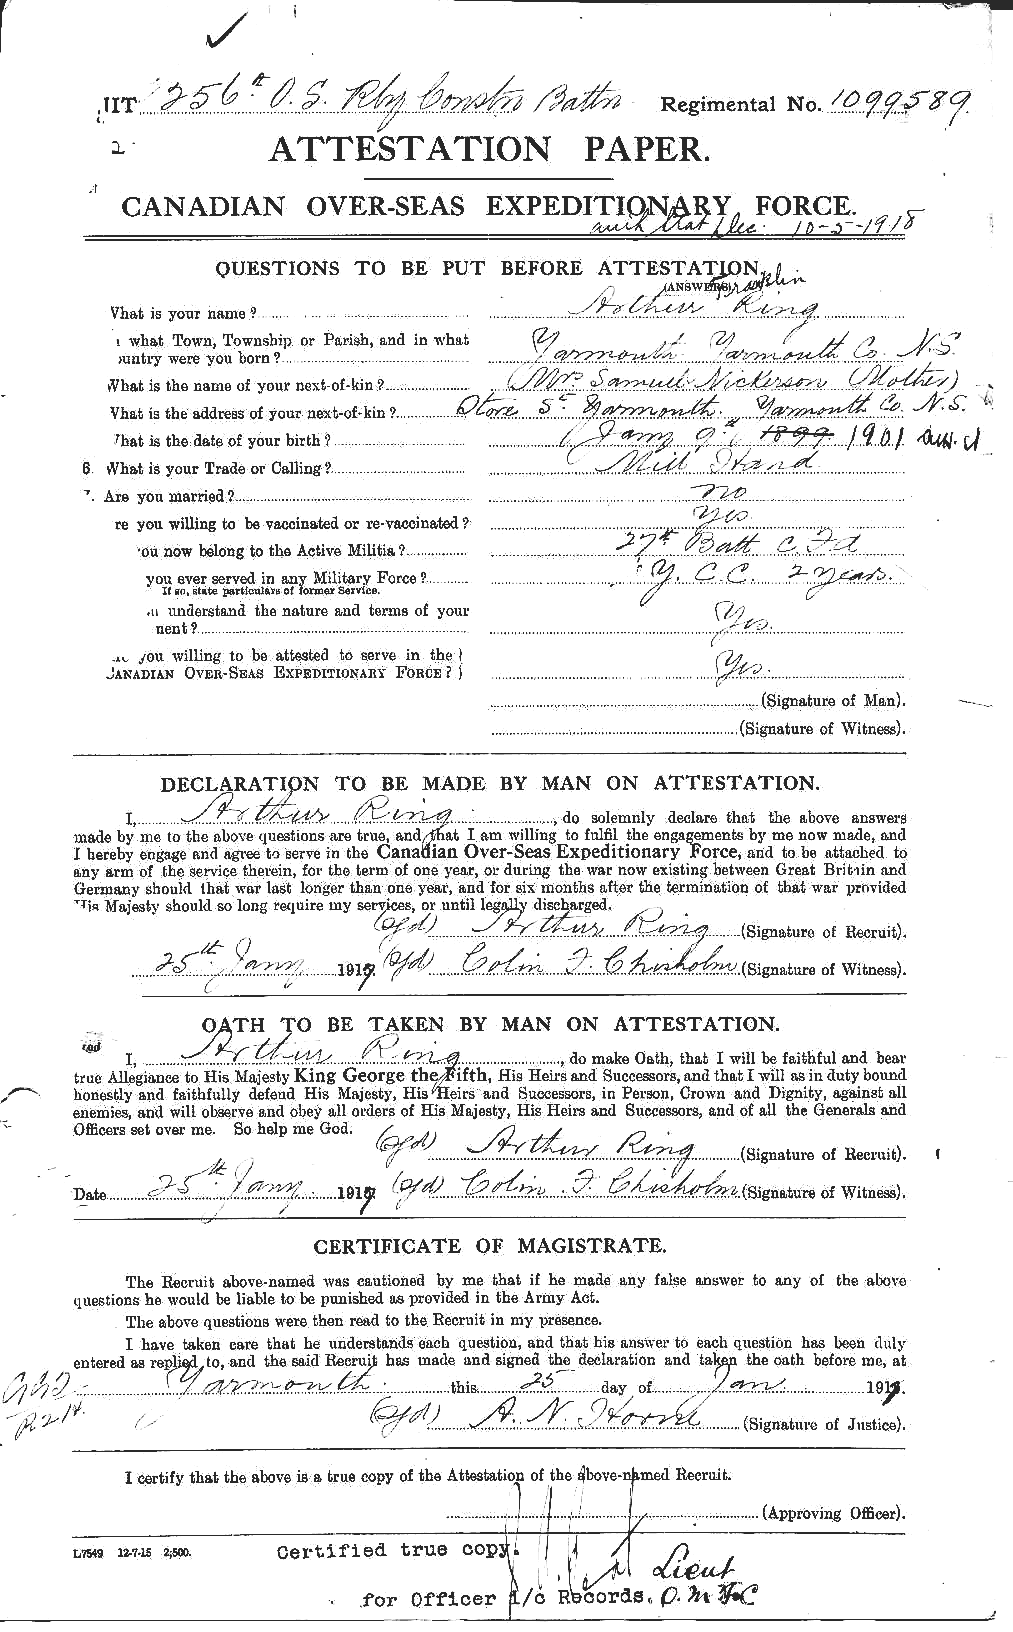 Dossiers du Personnel de la Première Guerre mondiale - CEC 604024a